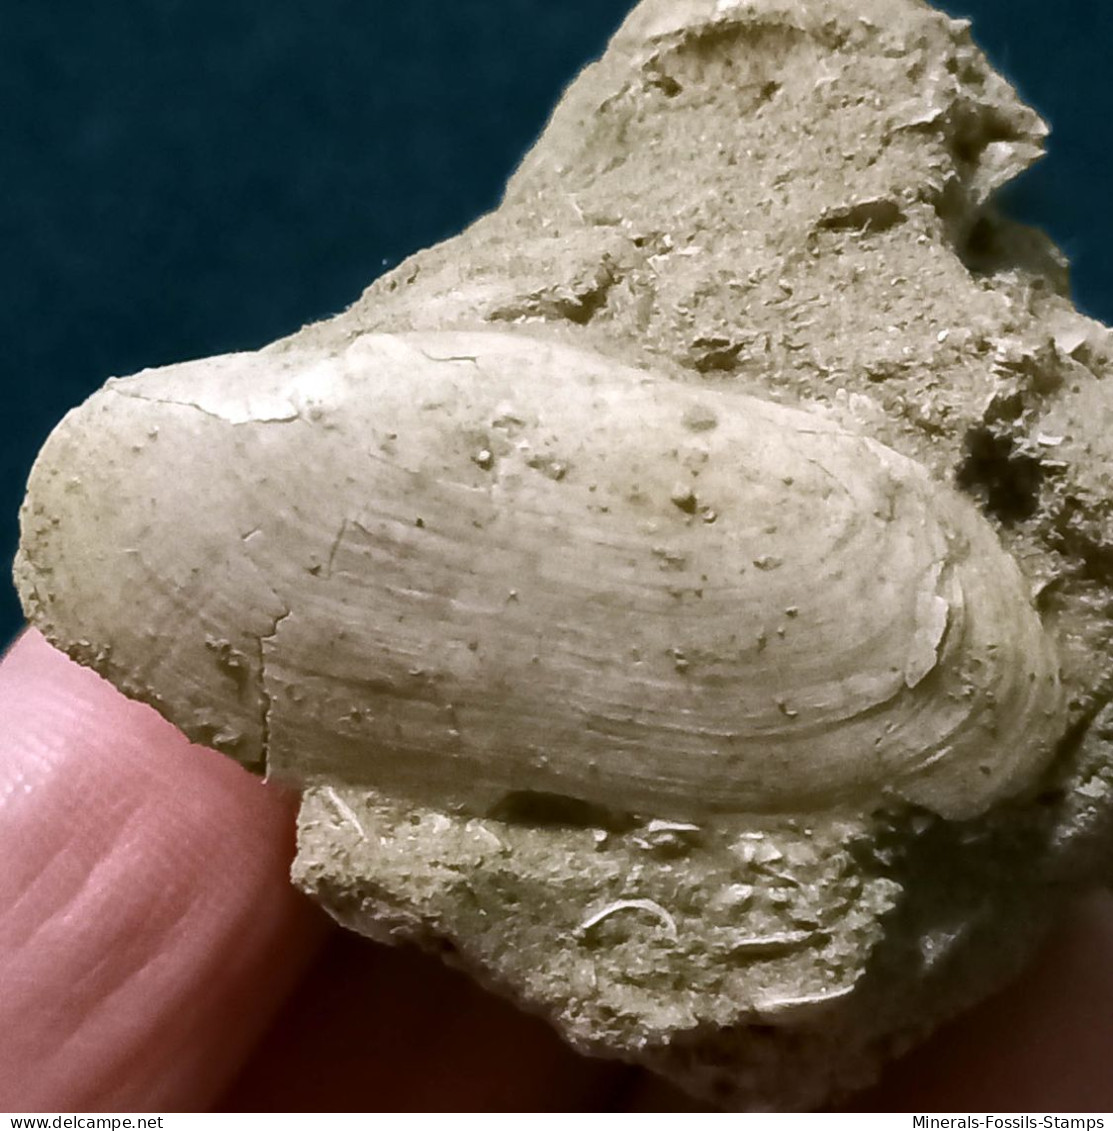 #VAND02 - AZORINUS CHAMASOLEN Fossil, Pliozän (Italien) - Fossilien